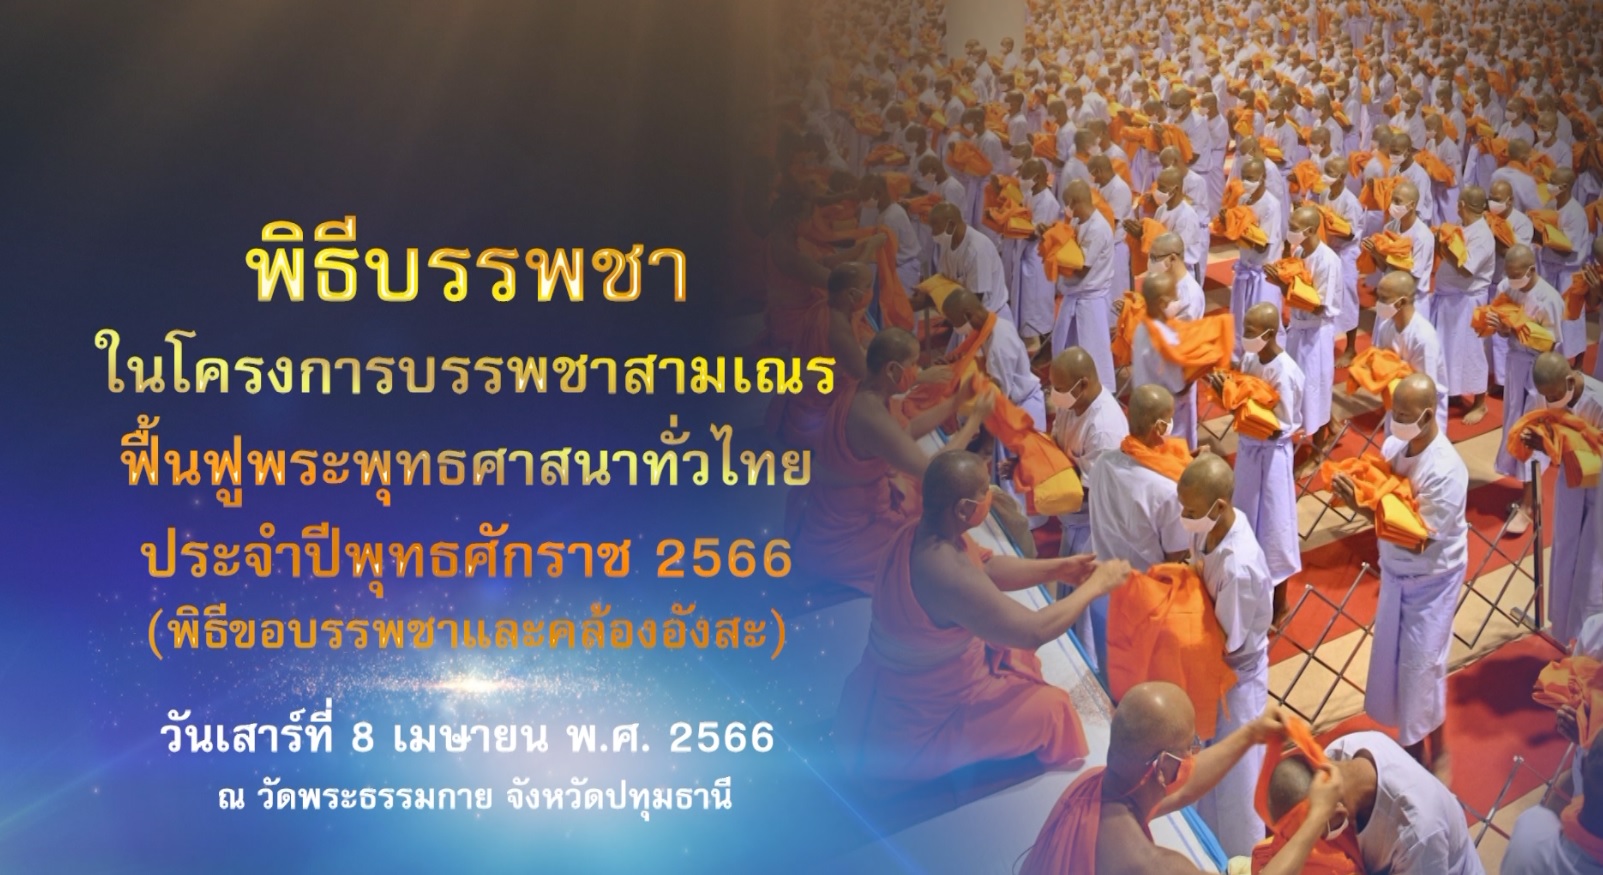 โครงการบรรพชาสามเณร ฟื้นฟูพระพุทธศาสนาทั่วไทย 660408